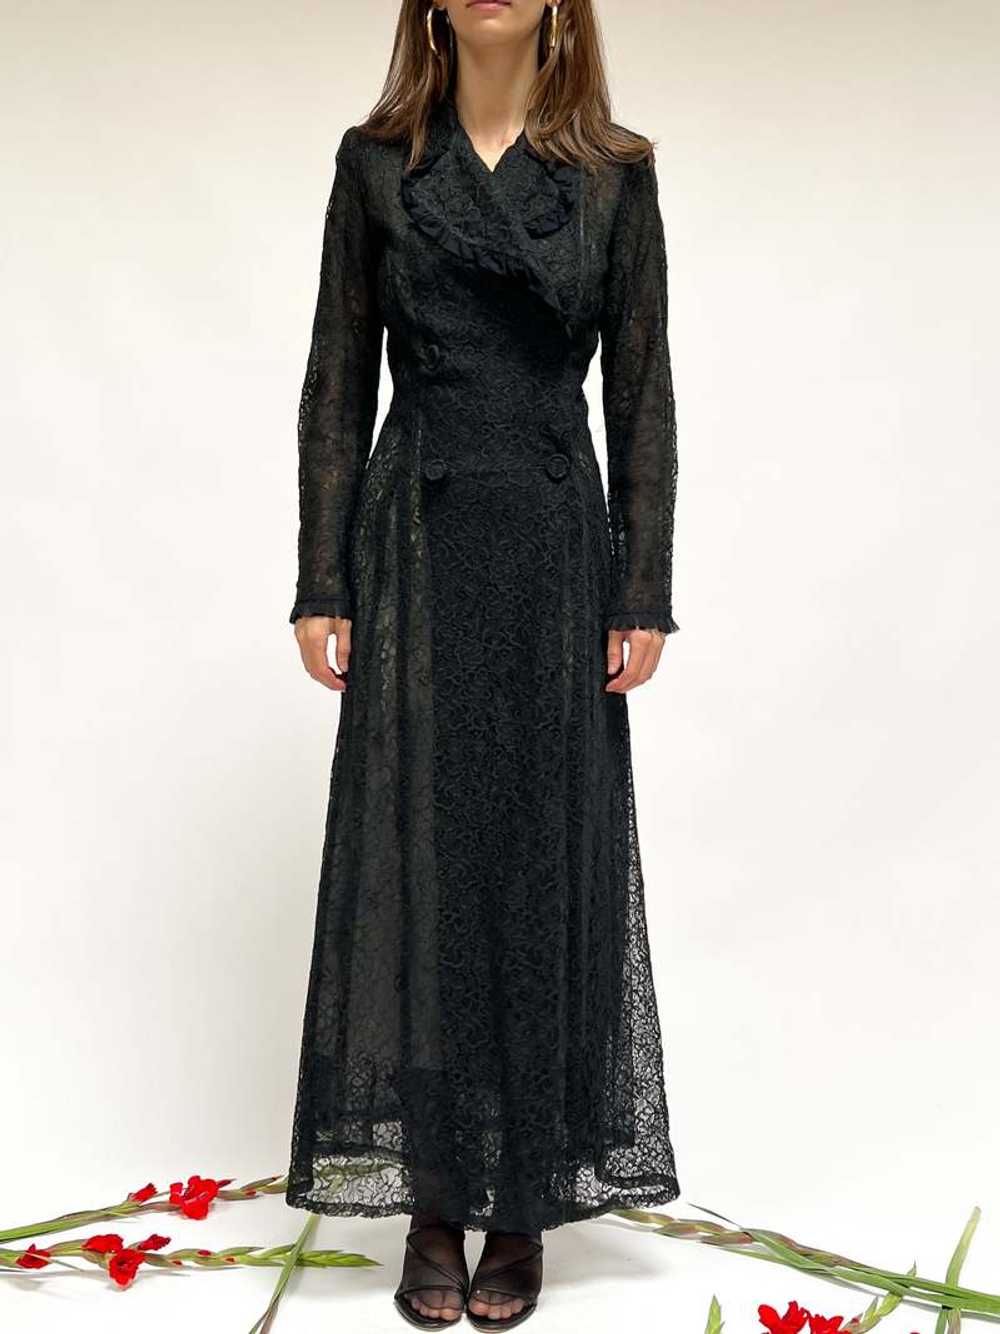 Vintage 1940s Lace Gown - Black - image 1